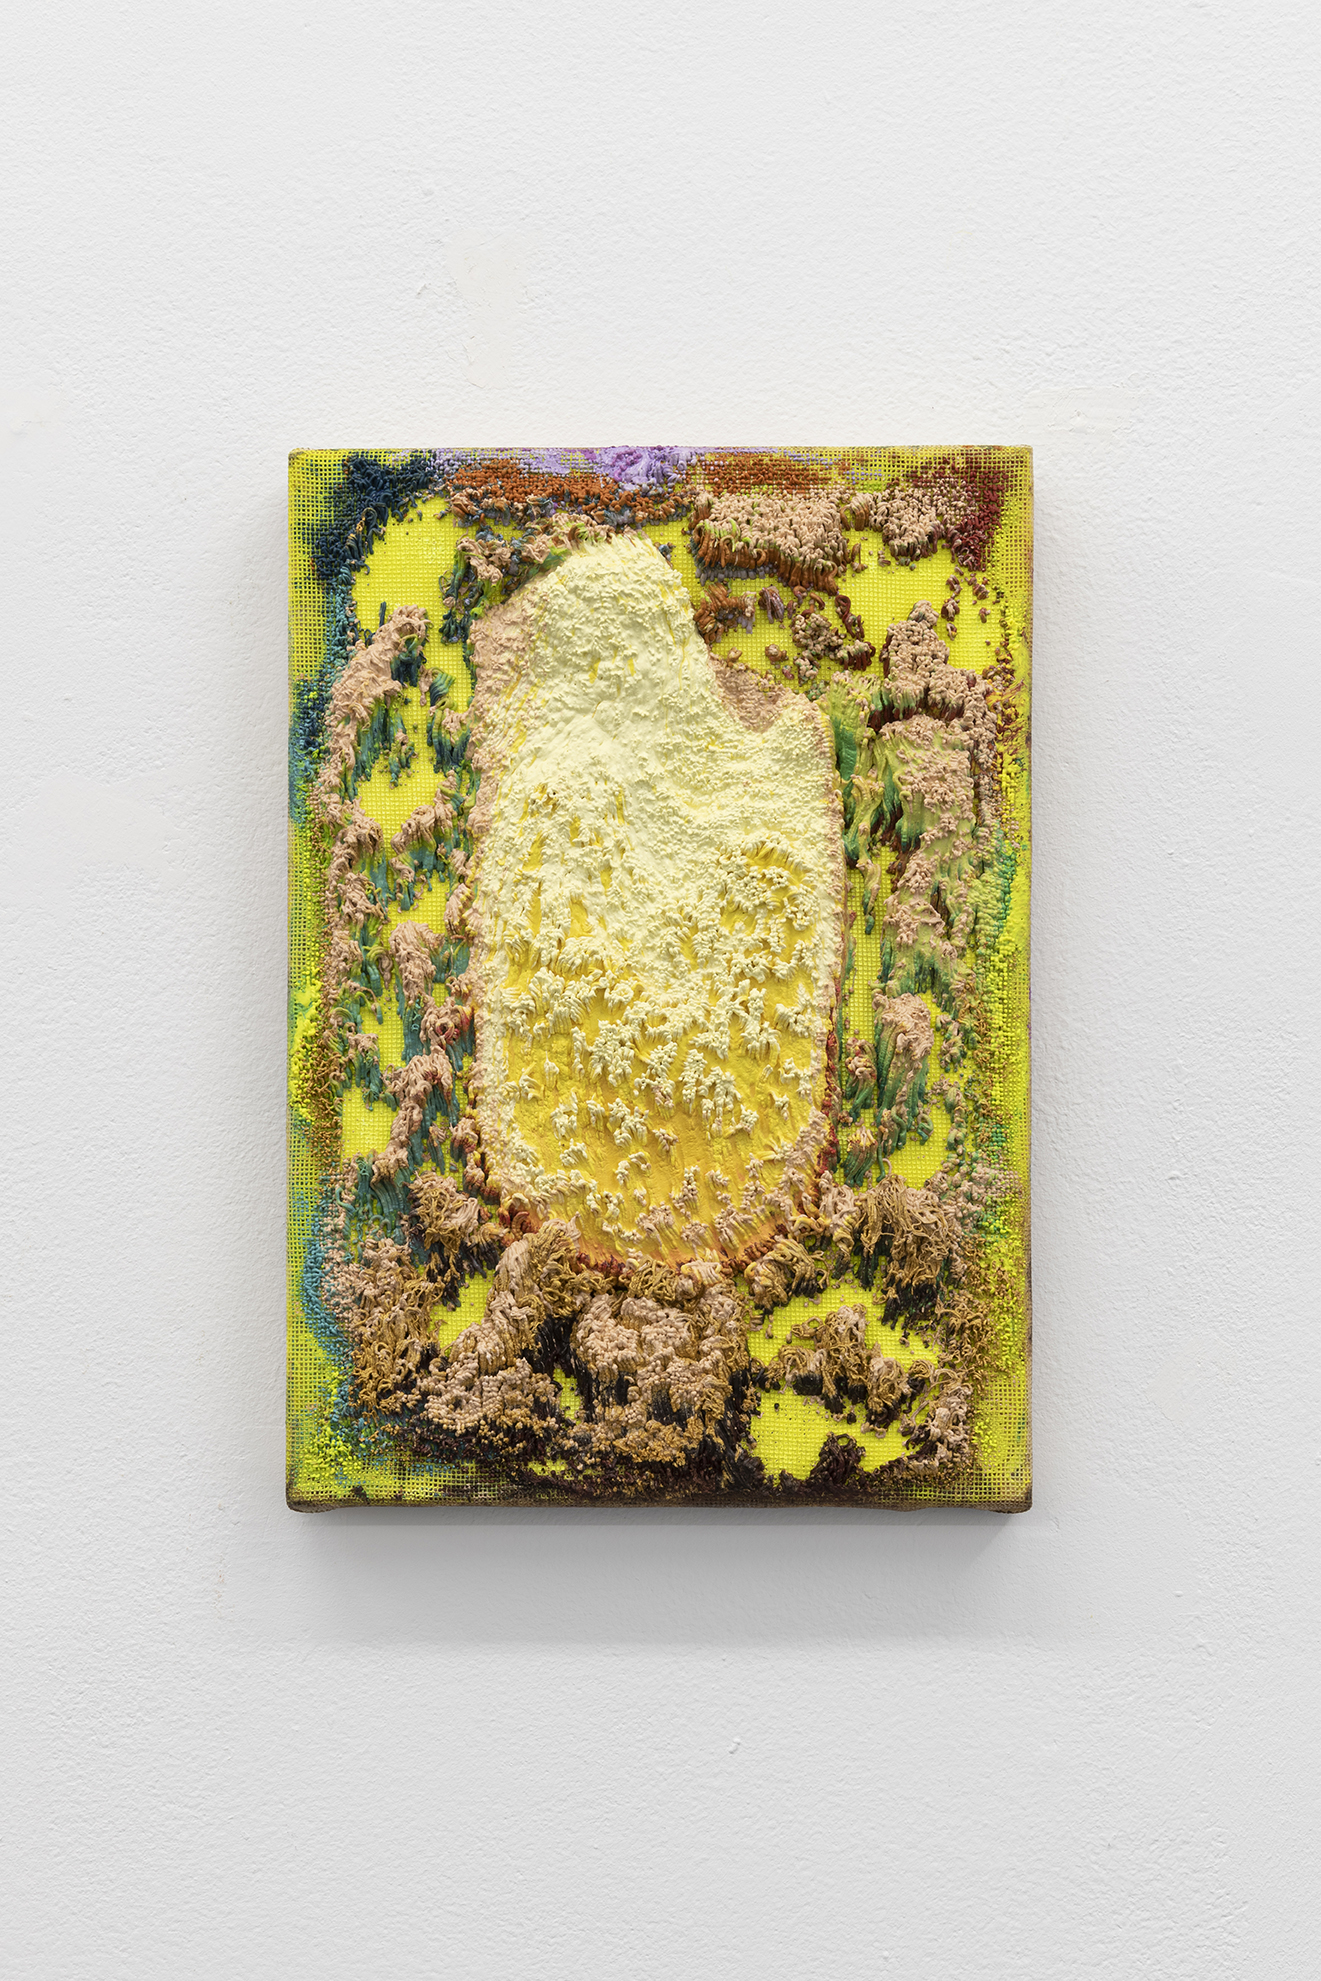 <p>Mesh (yellow ground), acrylic paint in needlepoint mesh, 20 x 30 cm</p>
